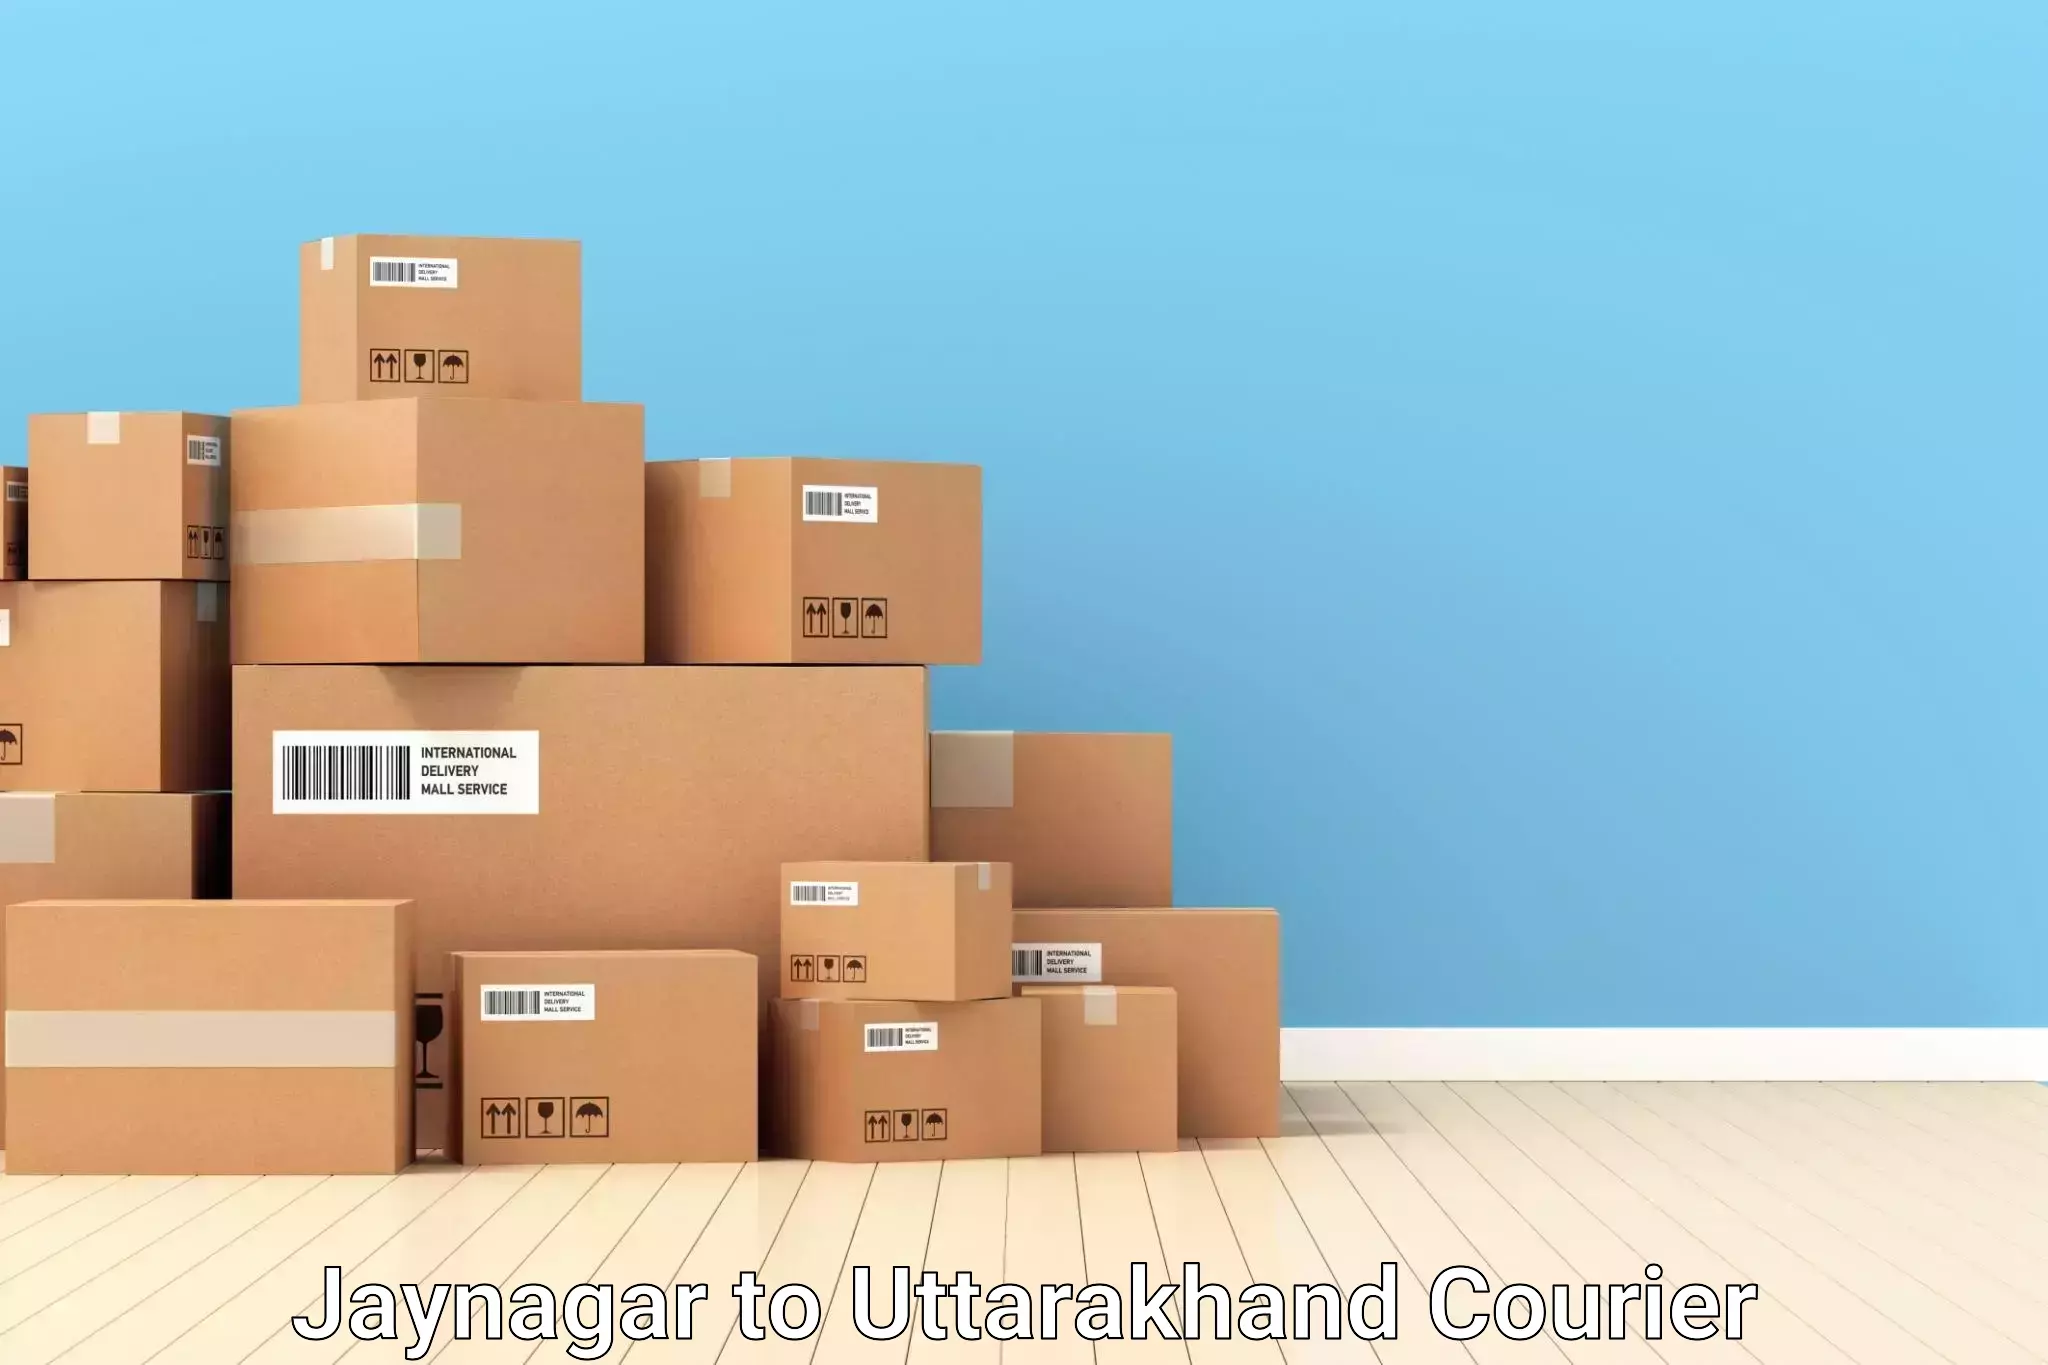 Luggage transport logistics Jaynagar to Lansdowne